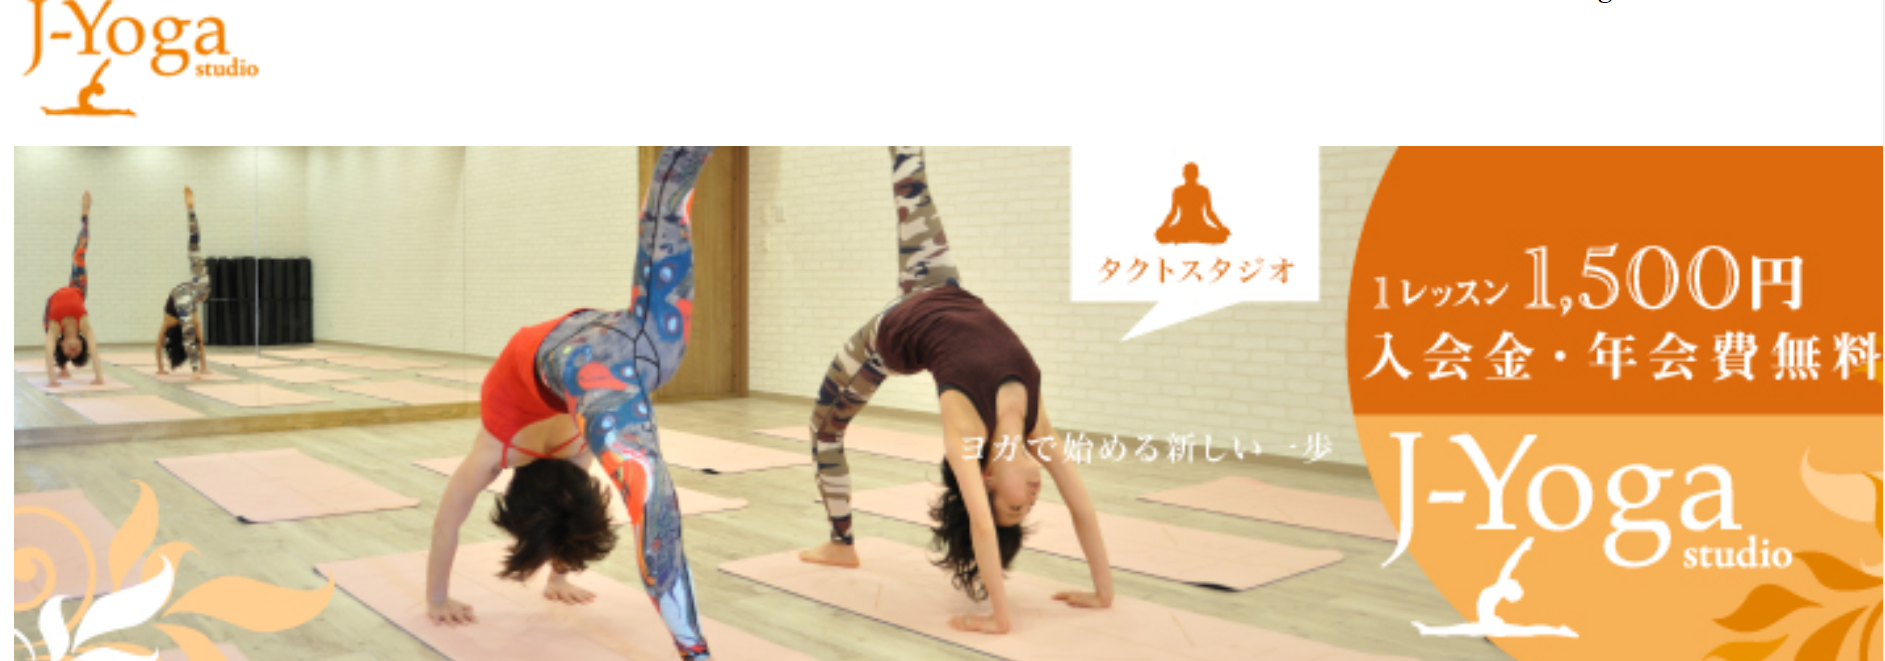 J-Yoga studio ジェイ・ヨガスタジオでヨガポーズをする女性2人